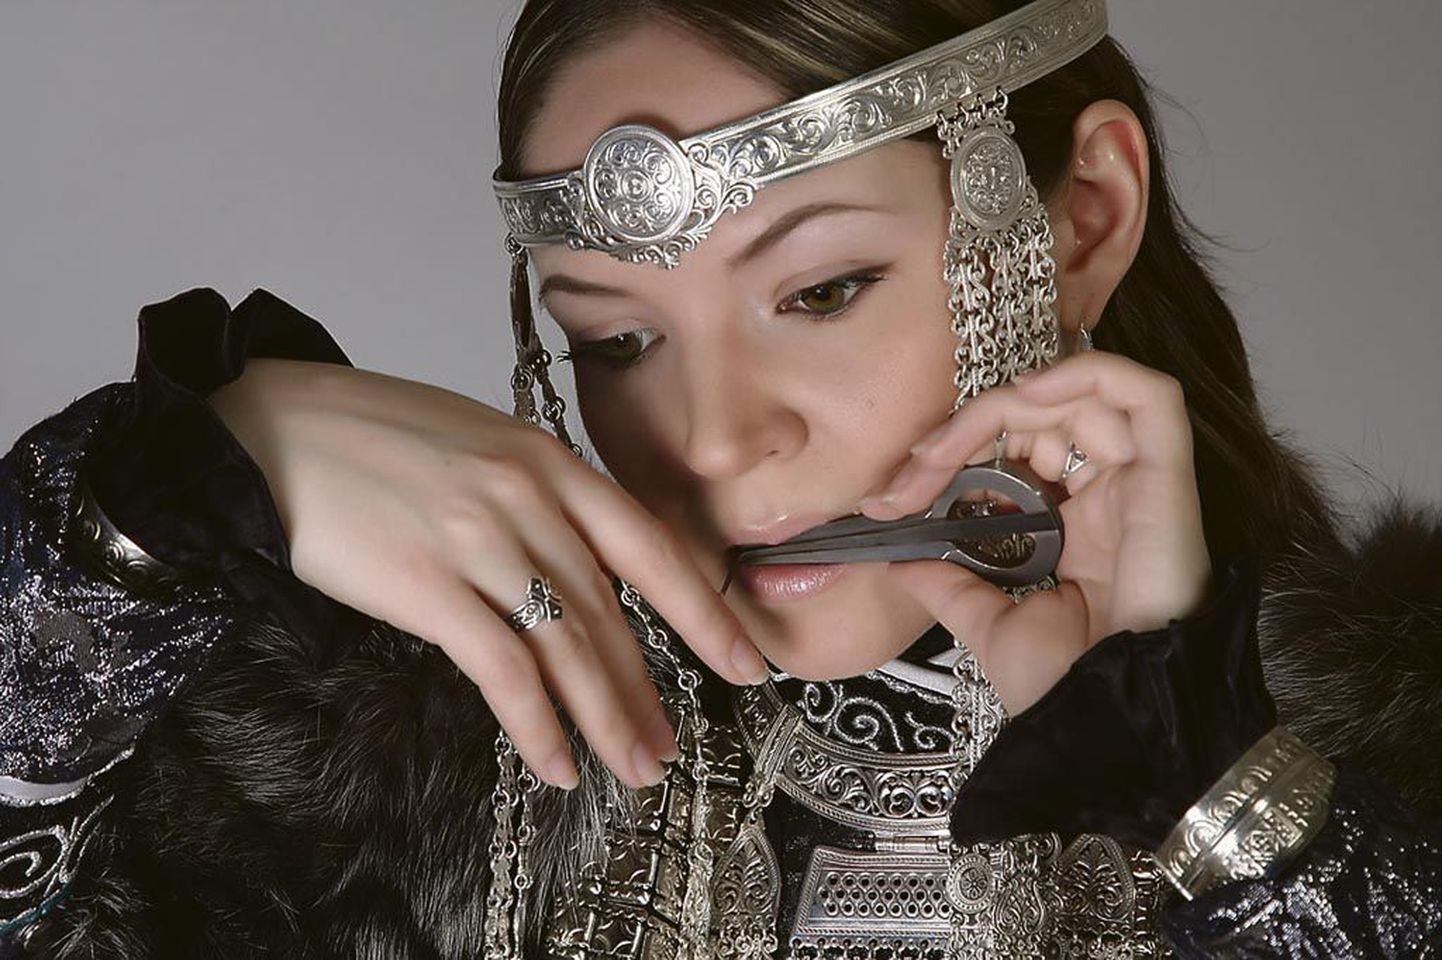 UUTAi ehk Olga Olena Podlužnaja kannab hõbeehteid, sest hõbe on Jakuutia rahva püha metall.